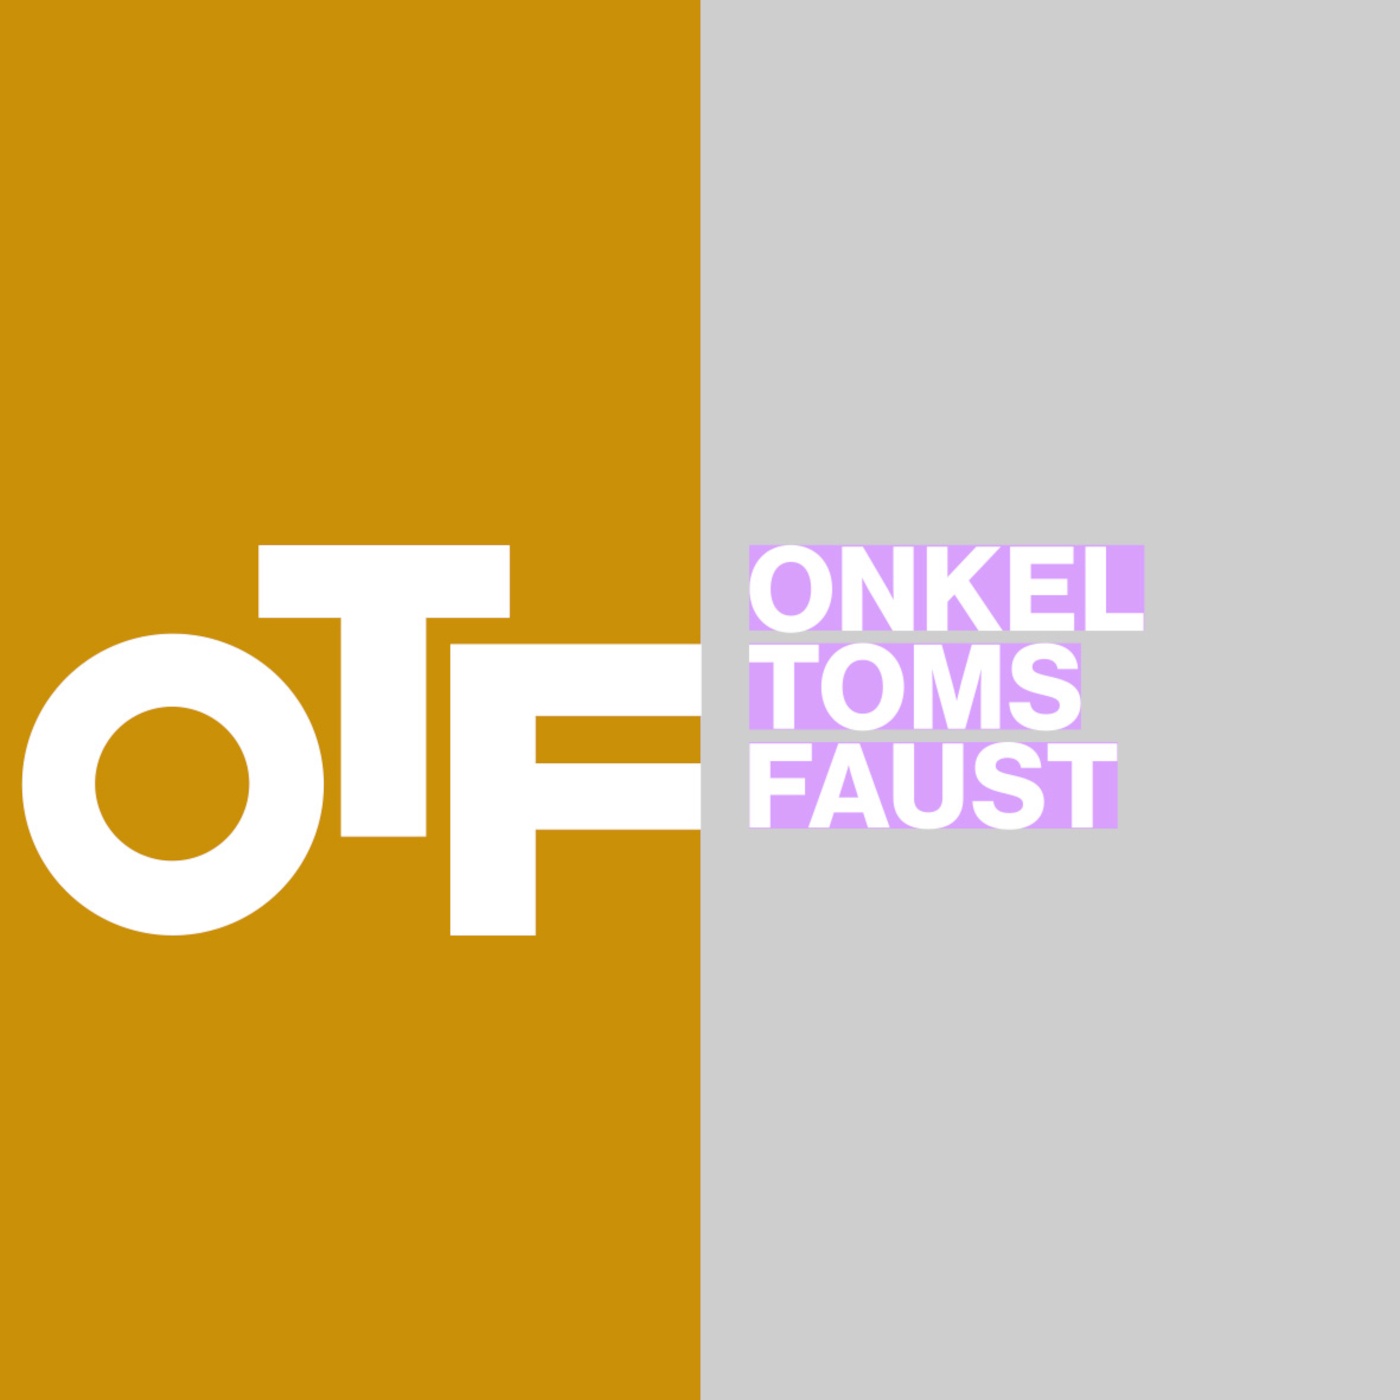 Onkel Toms Faust - Podcast über Schwarze Perspektiven und Solidarität